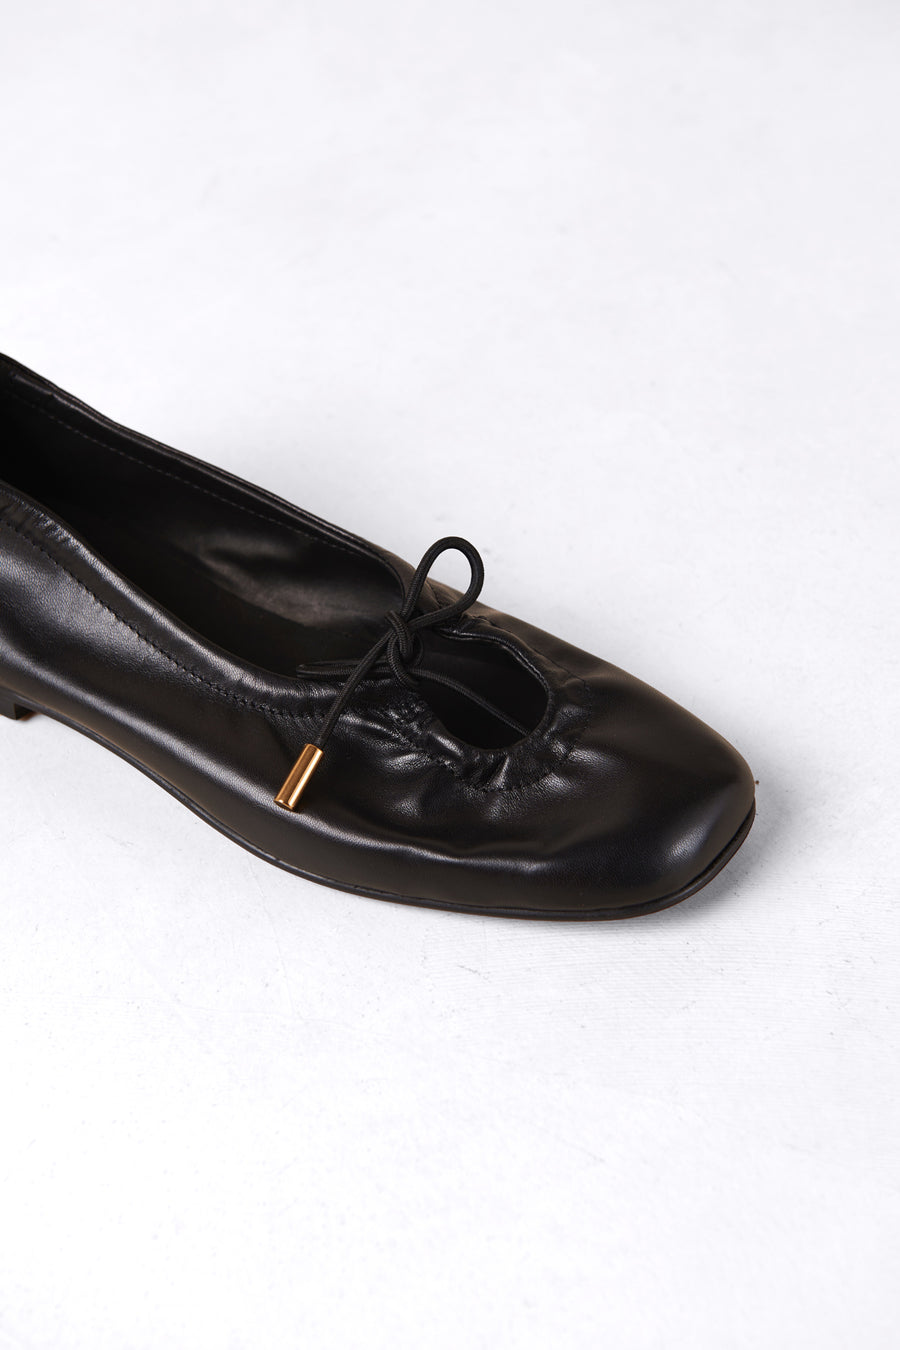 Rosalind Leather Ballet Flat - Black